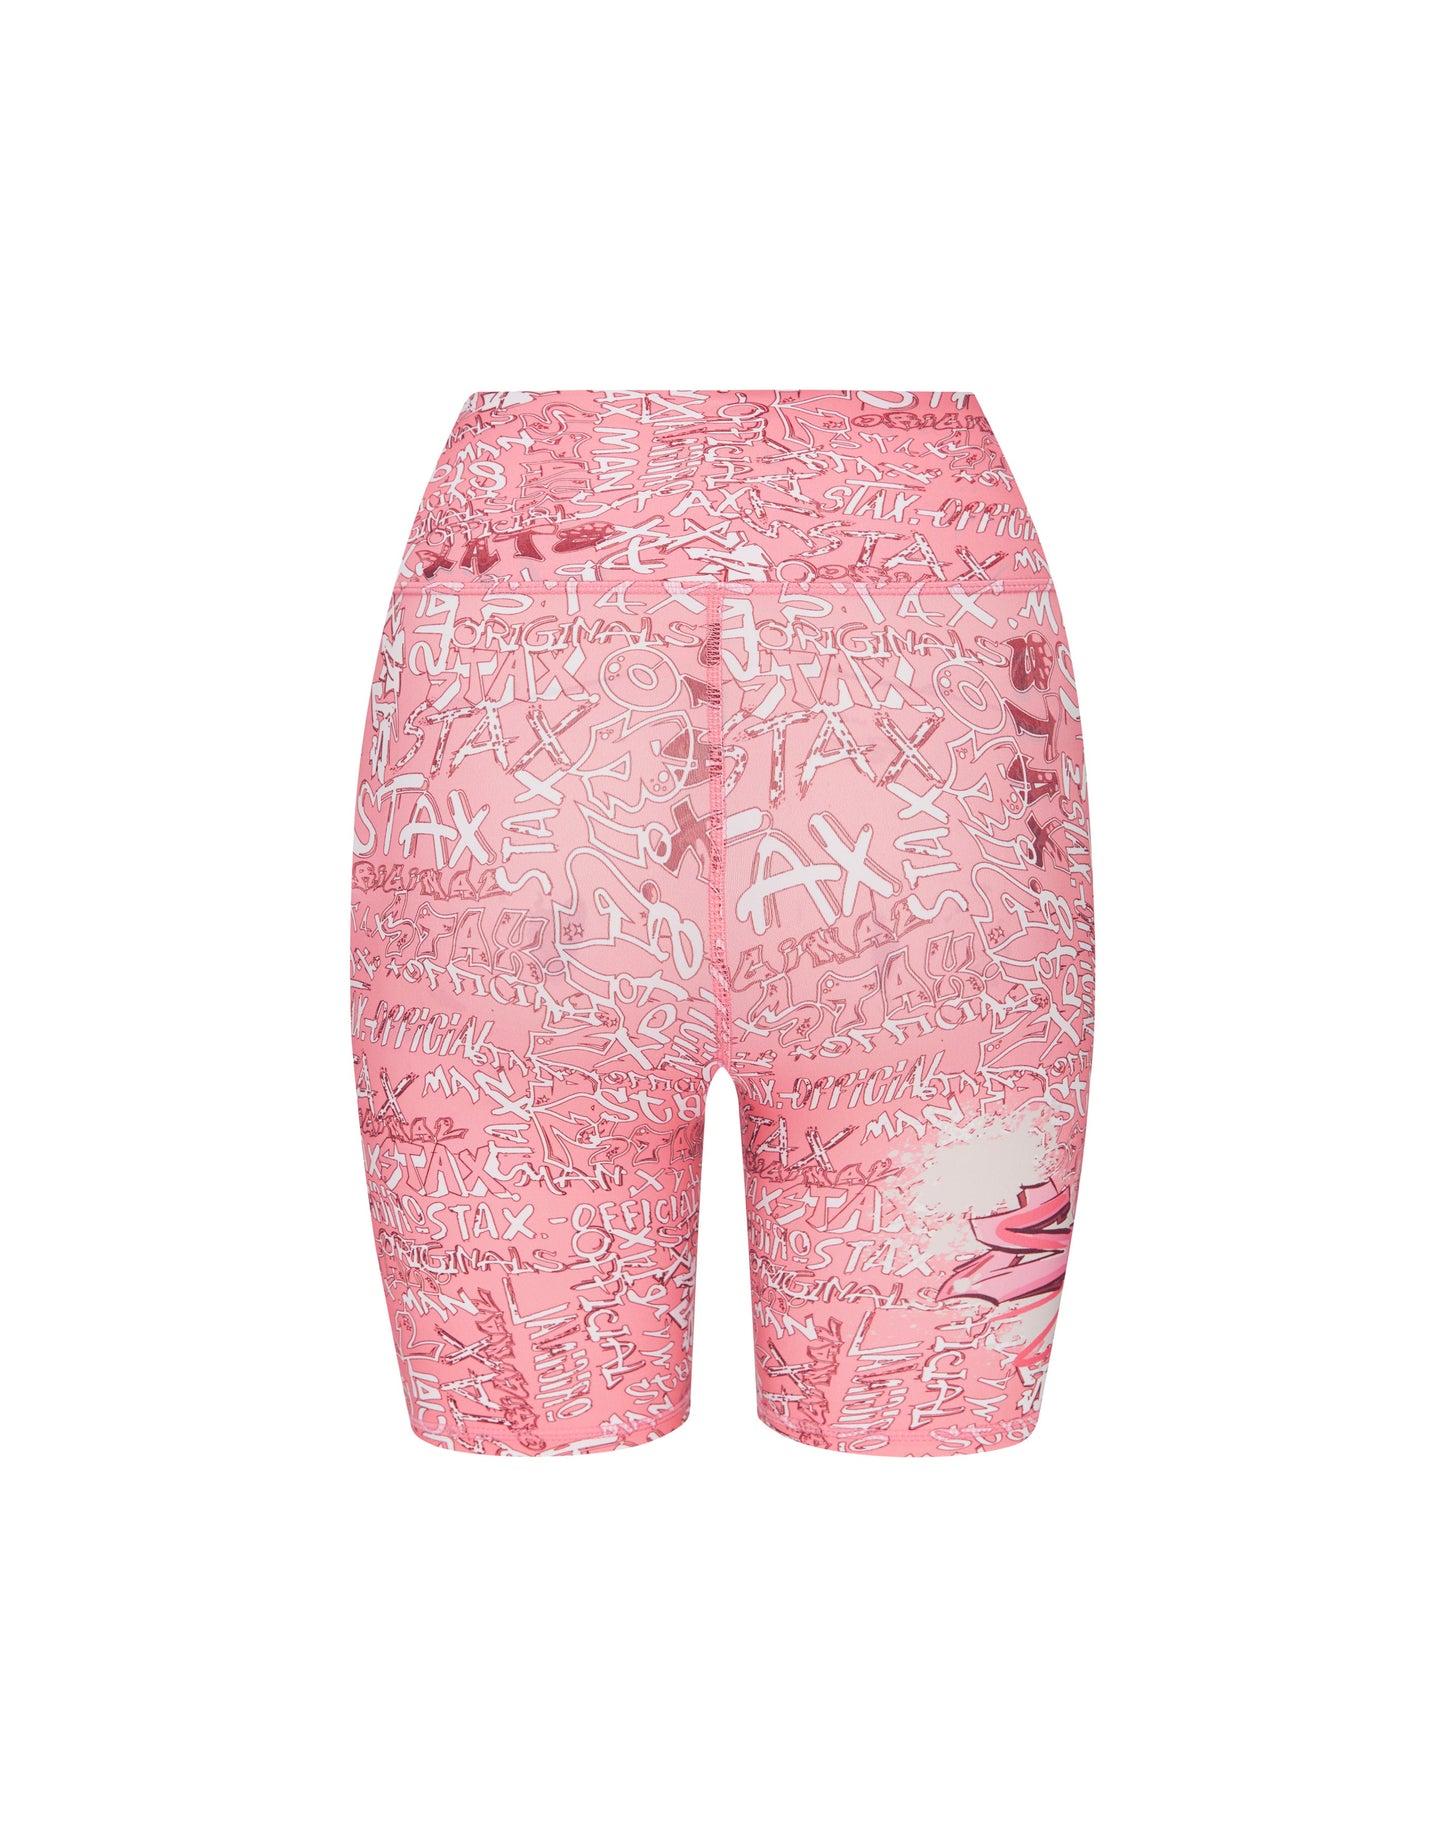 Graffiti Bike Shorts - Pink and White